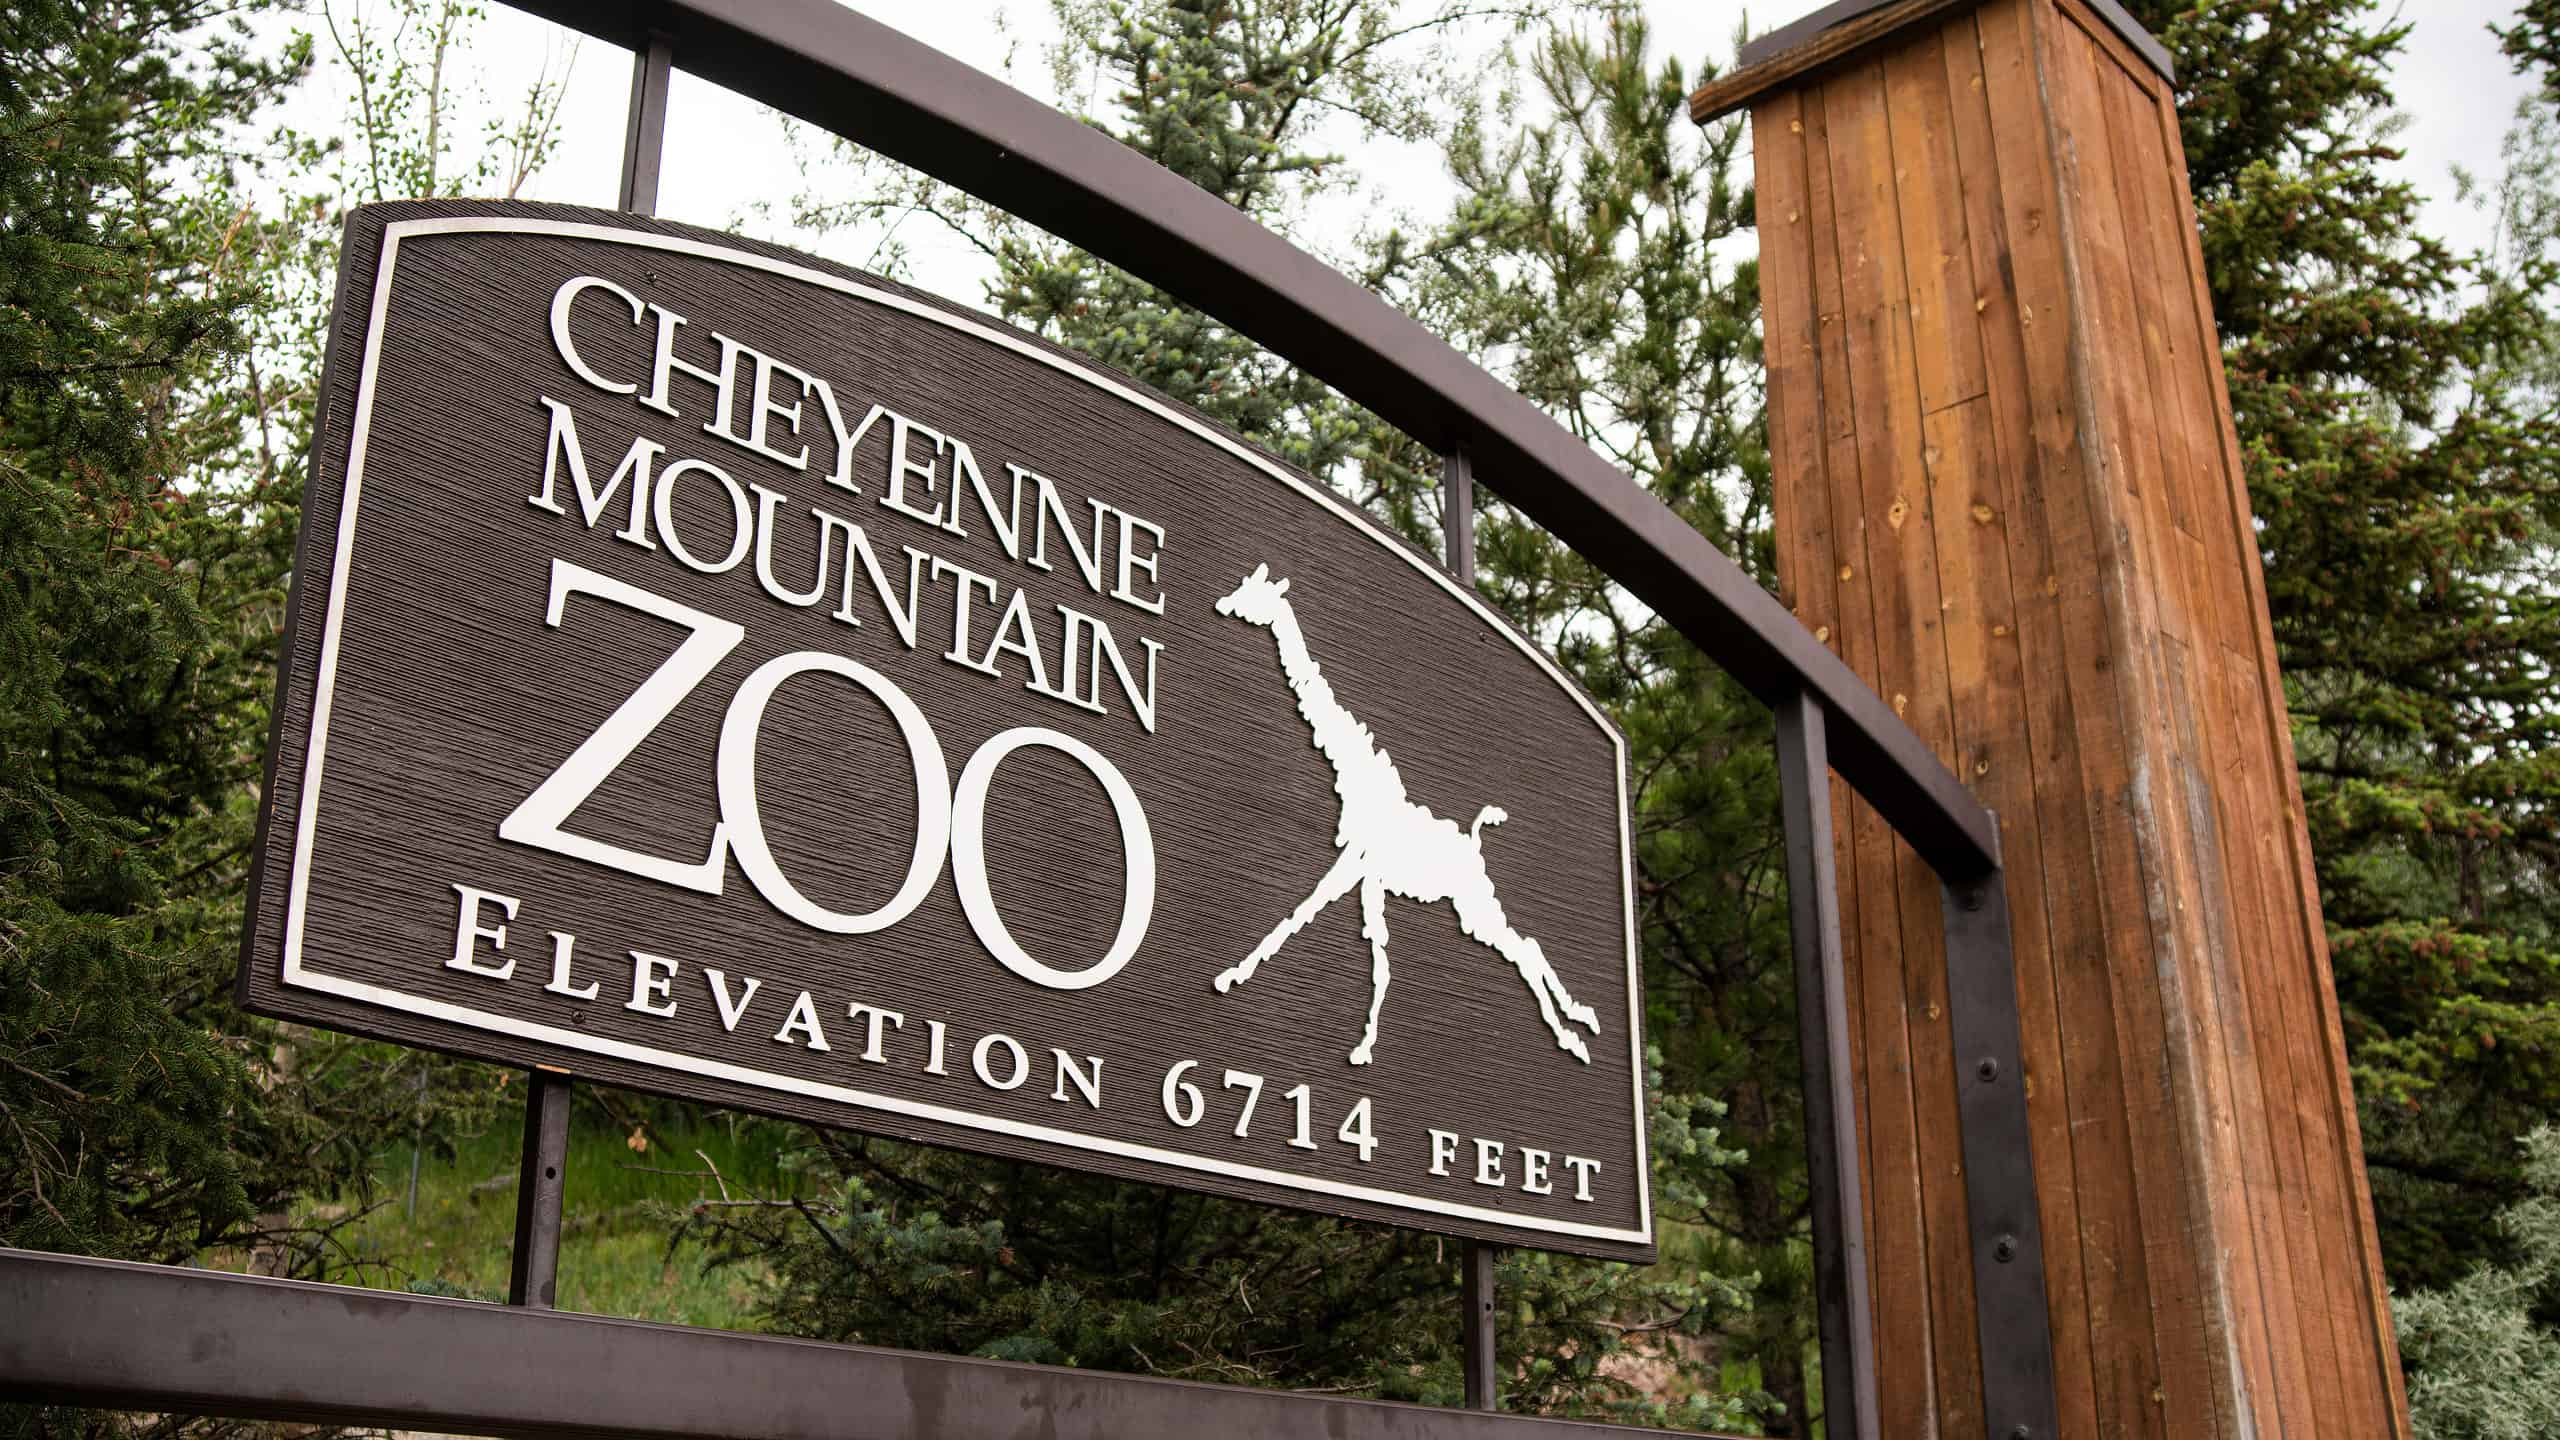 Il Cheyenne Mountain Zoo è lo zoo più alto degli Stati Uniti.